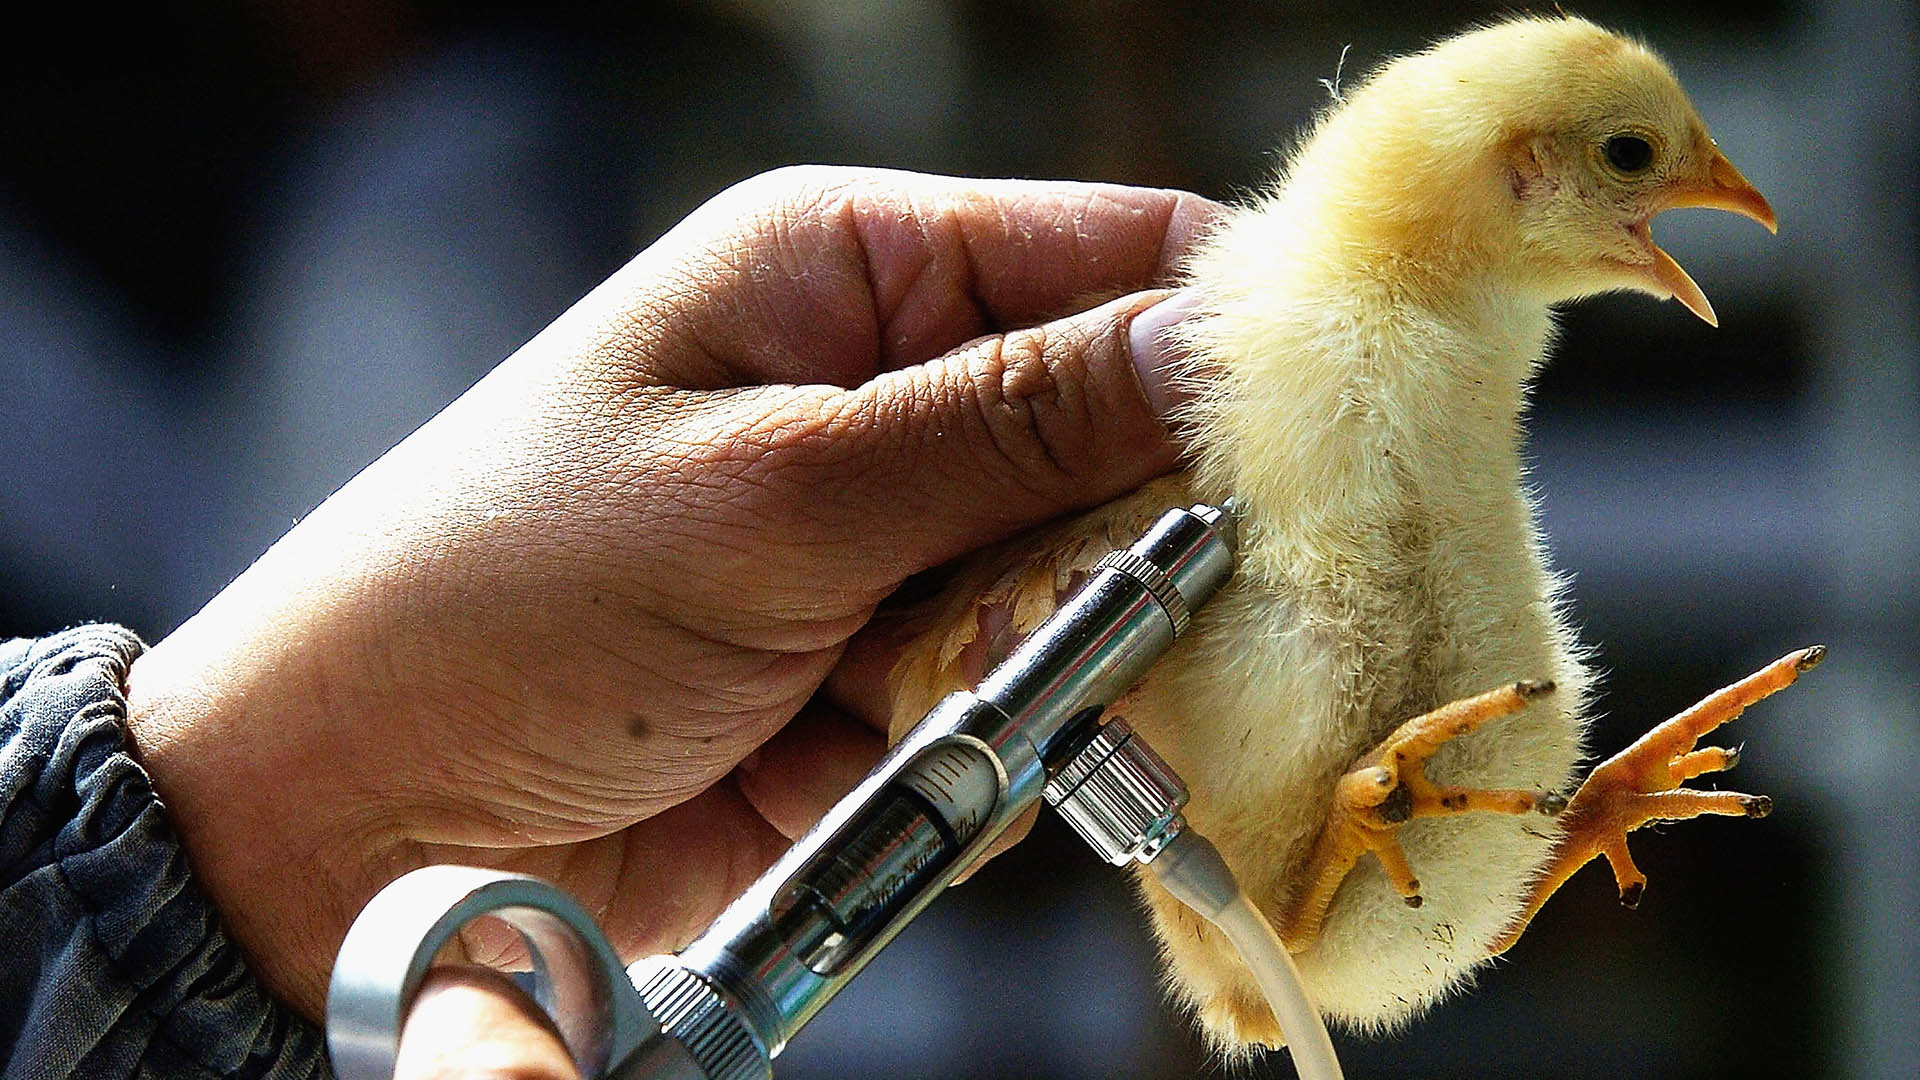 Uruguay vacuna contra la gripe aviar a unas cinco millones de gallinas de postura y reproductoras, según confirmó este jueves el ministro de Ganadería, Agricultura y Pesca, Fernando Mattos / (Photo by China Photos/Getty Images)